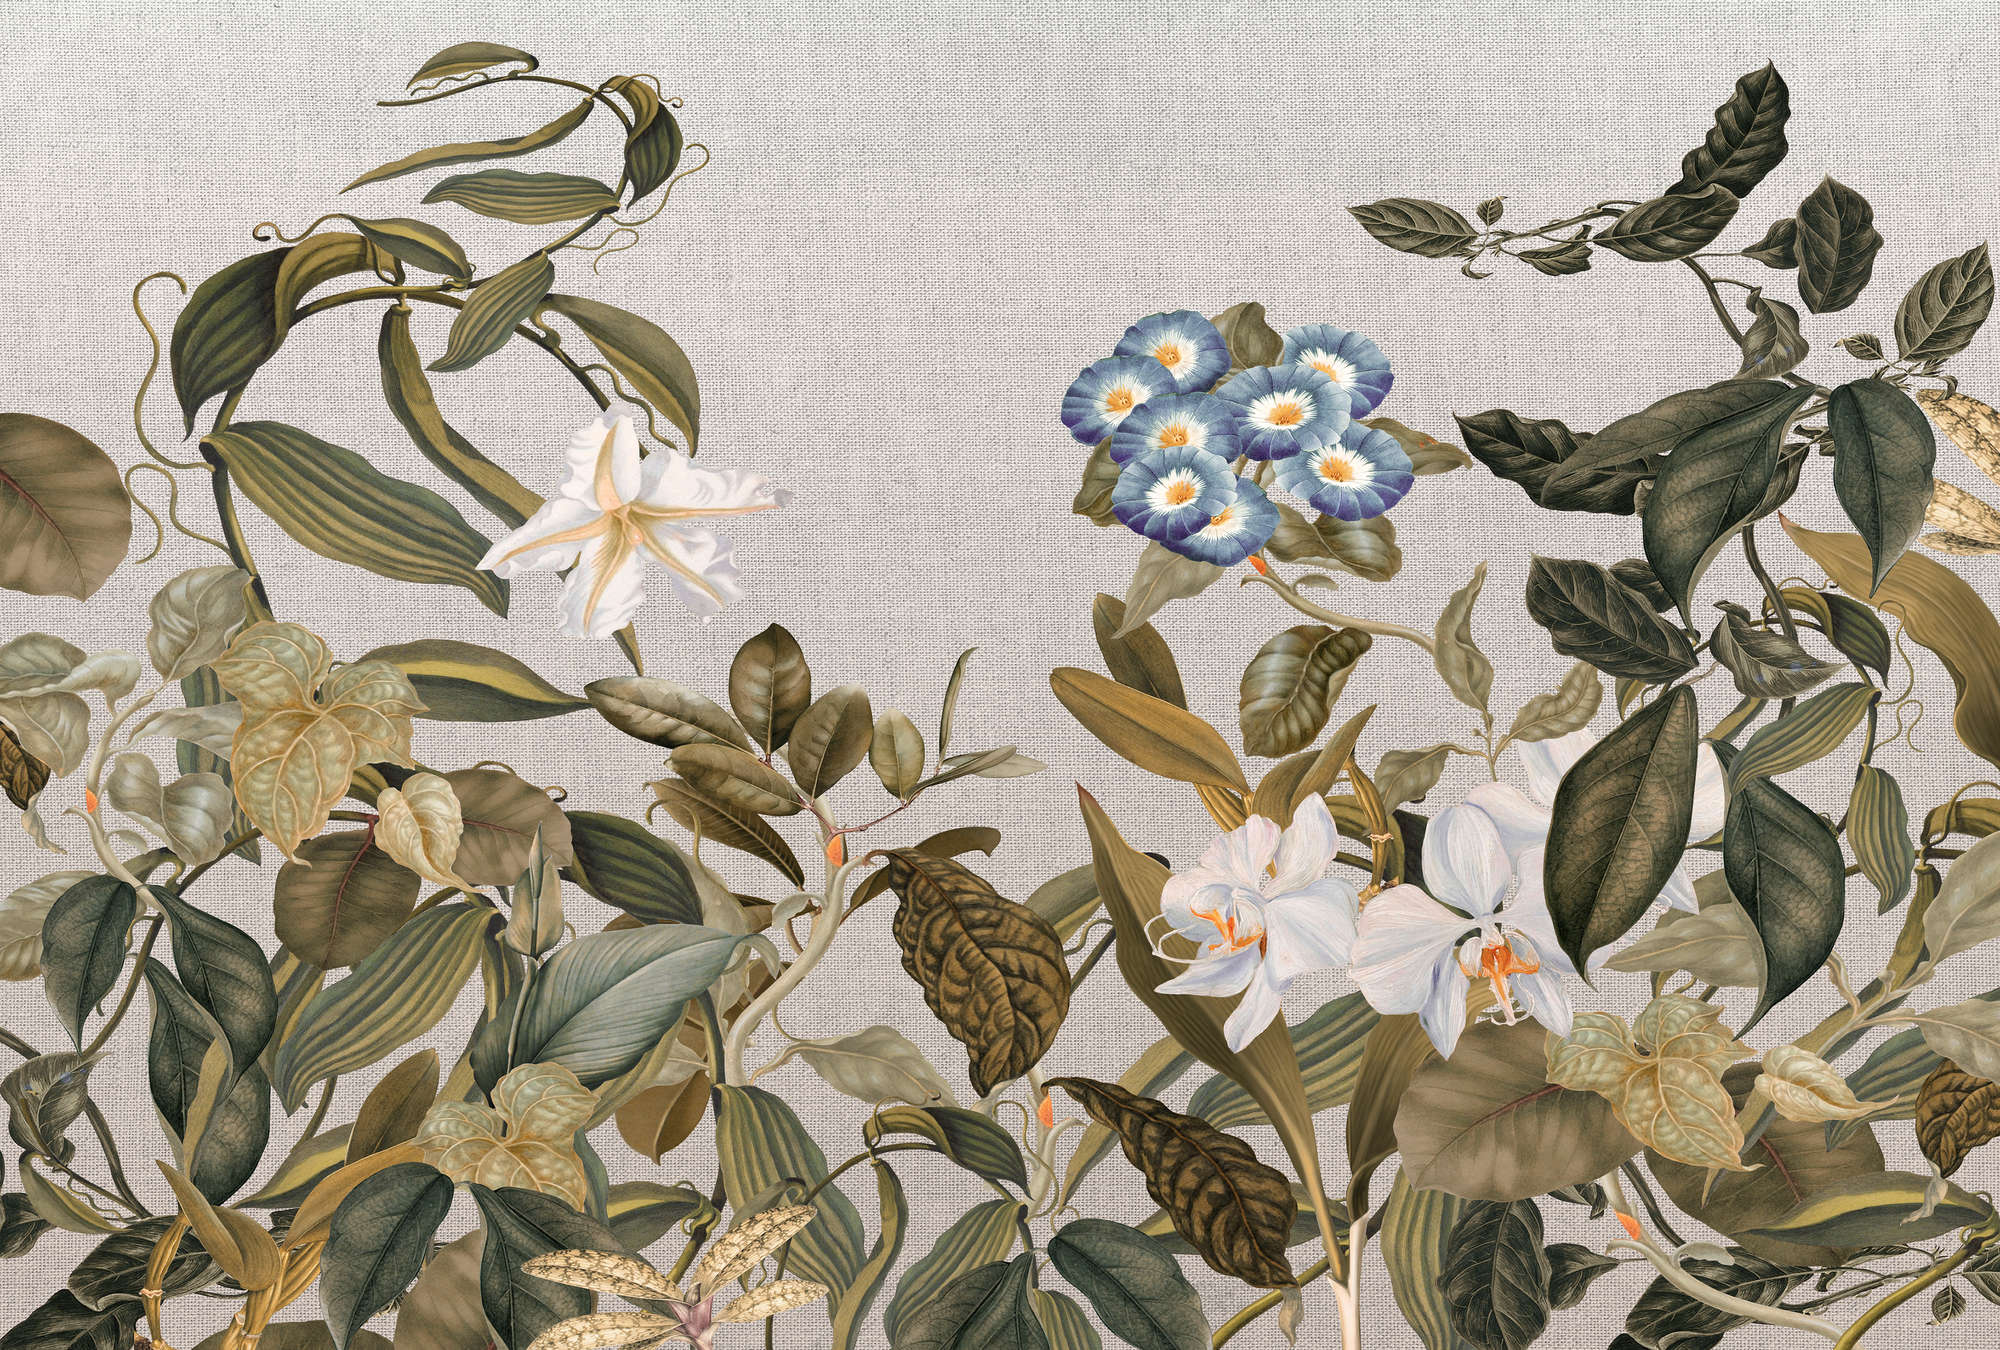             Papier peint style botanique Fleurs, feuilles & aspect textile - vert, gris, bleu
        